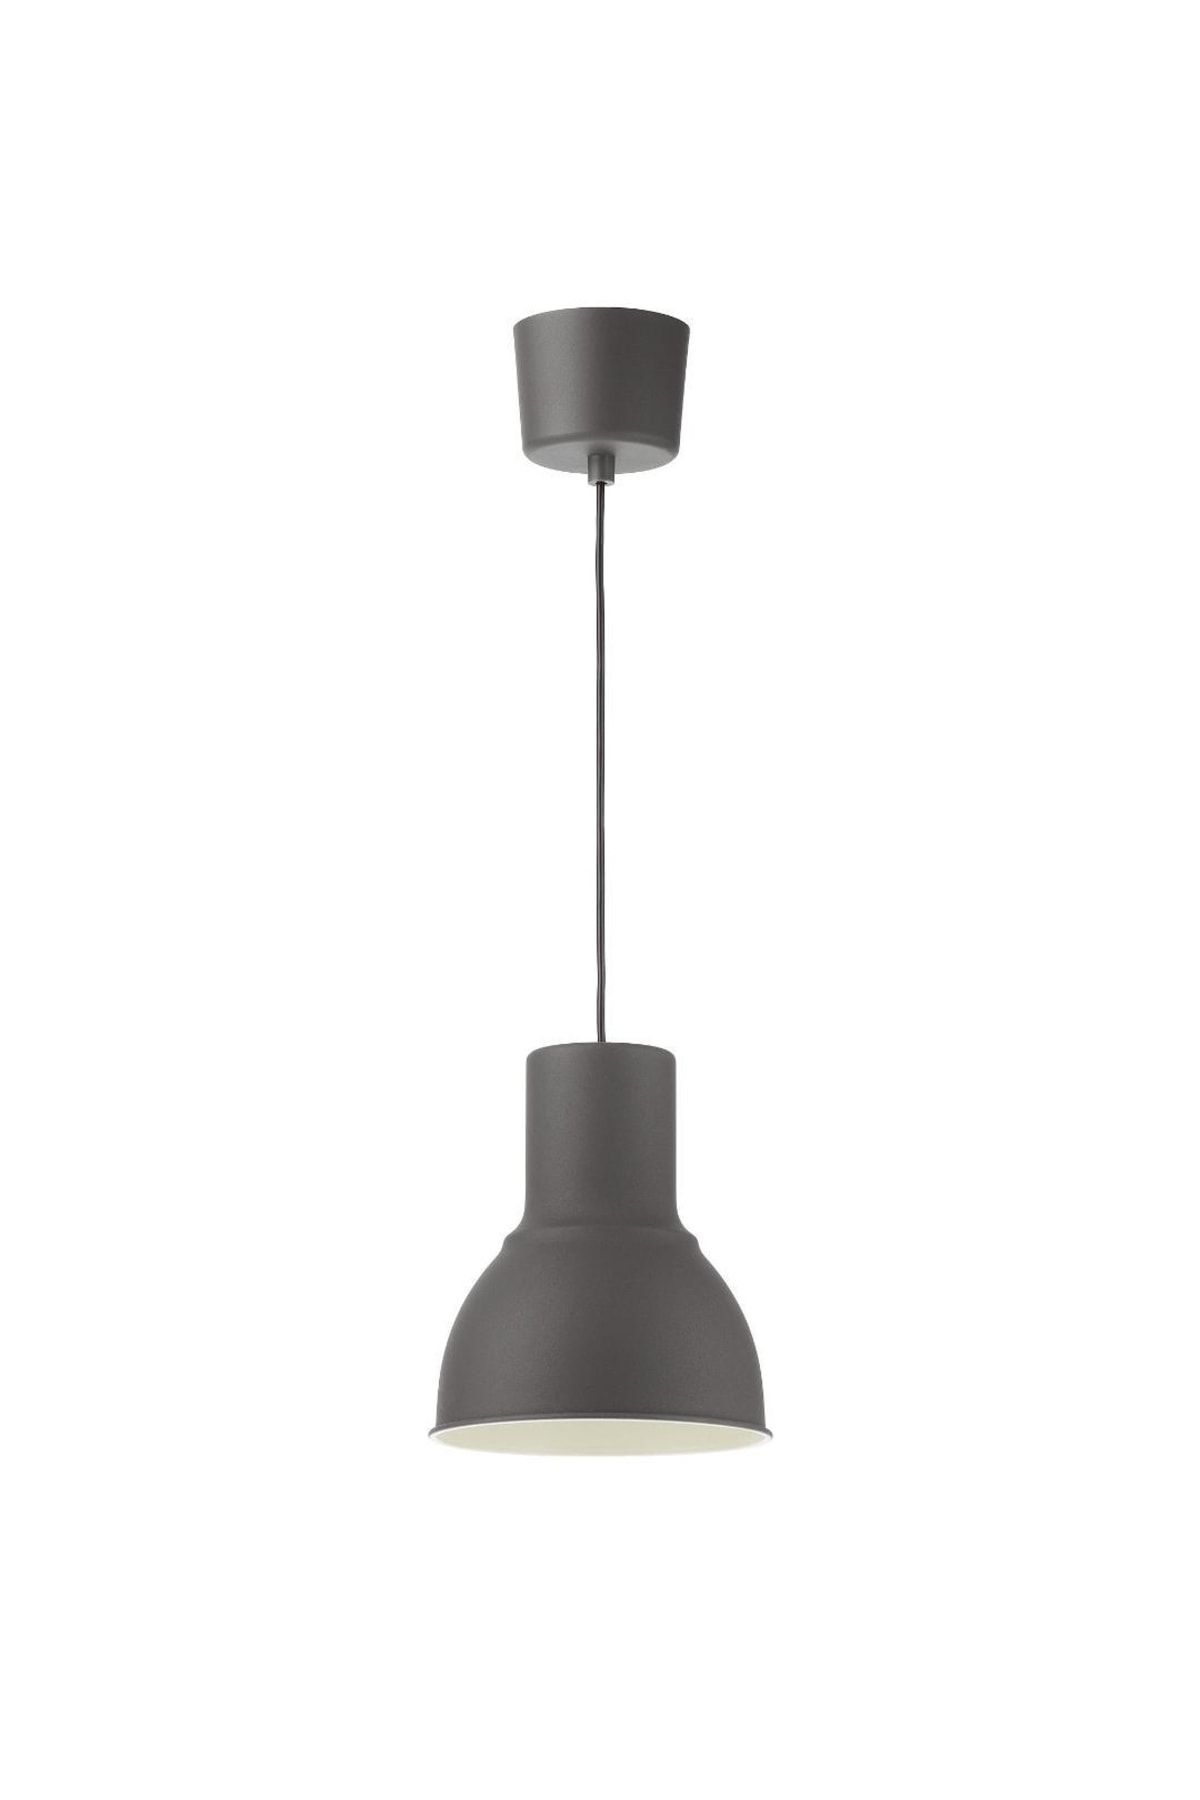 IKEA Hektar Sarkıt Lamba, Koyu Gri, Yemek Masası Ve Bar Masası Lambası 22 Cm